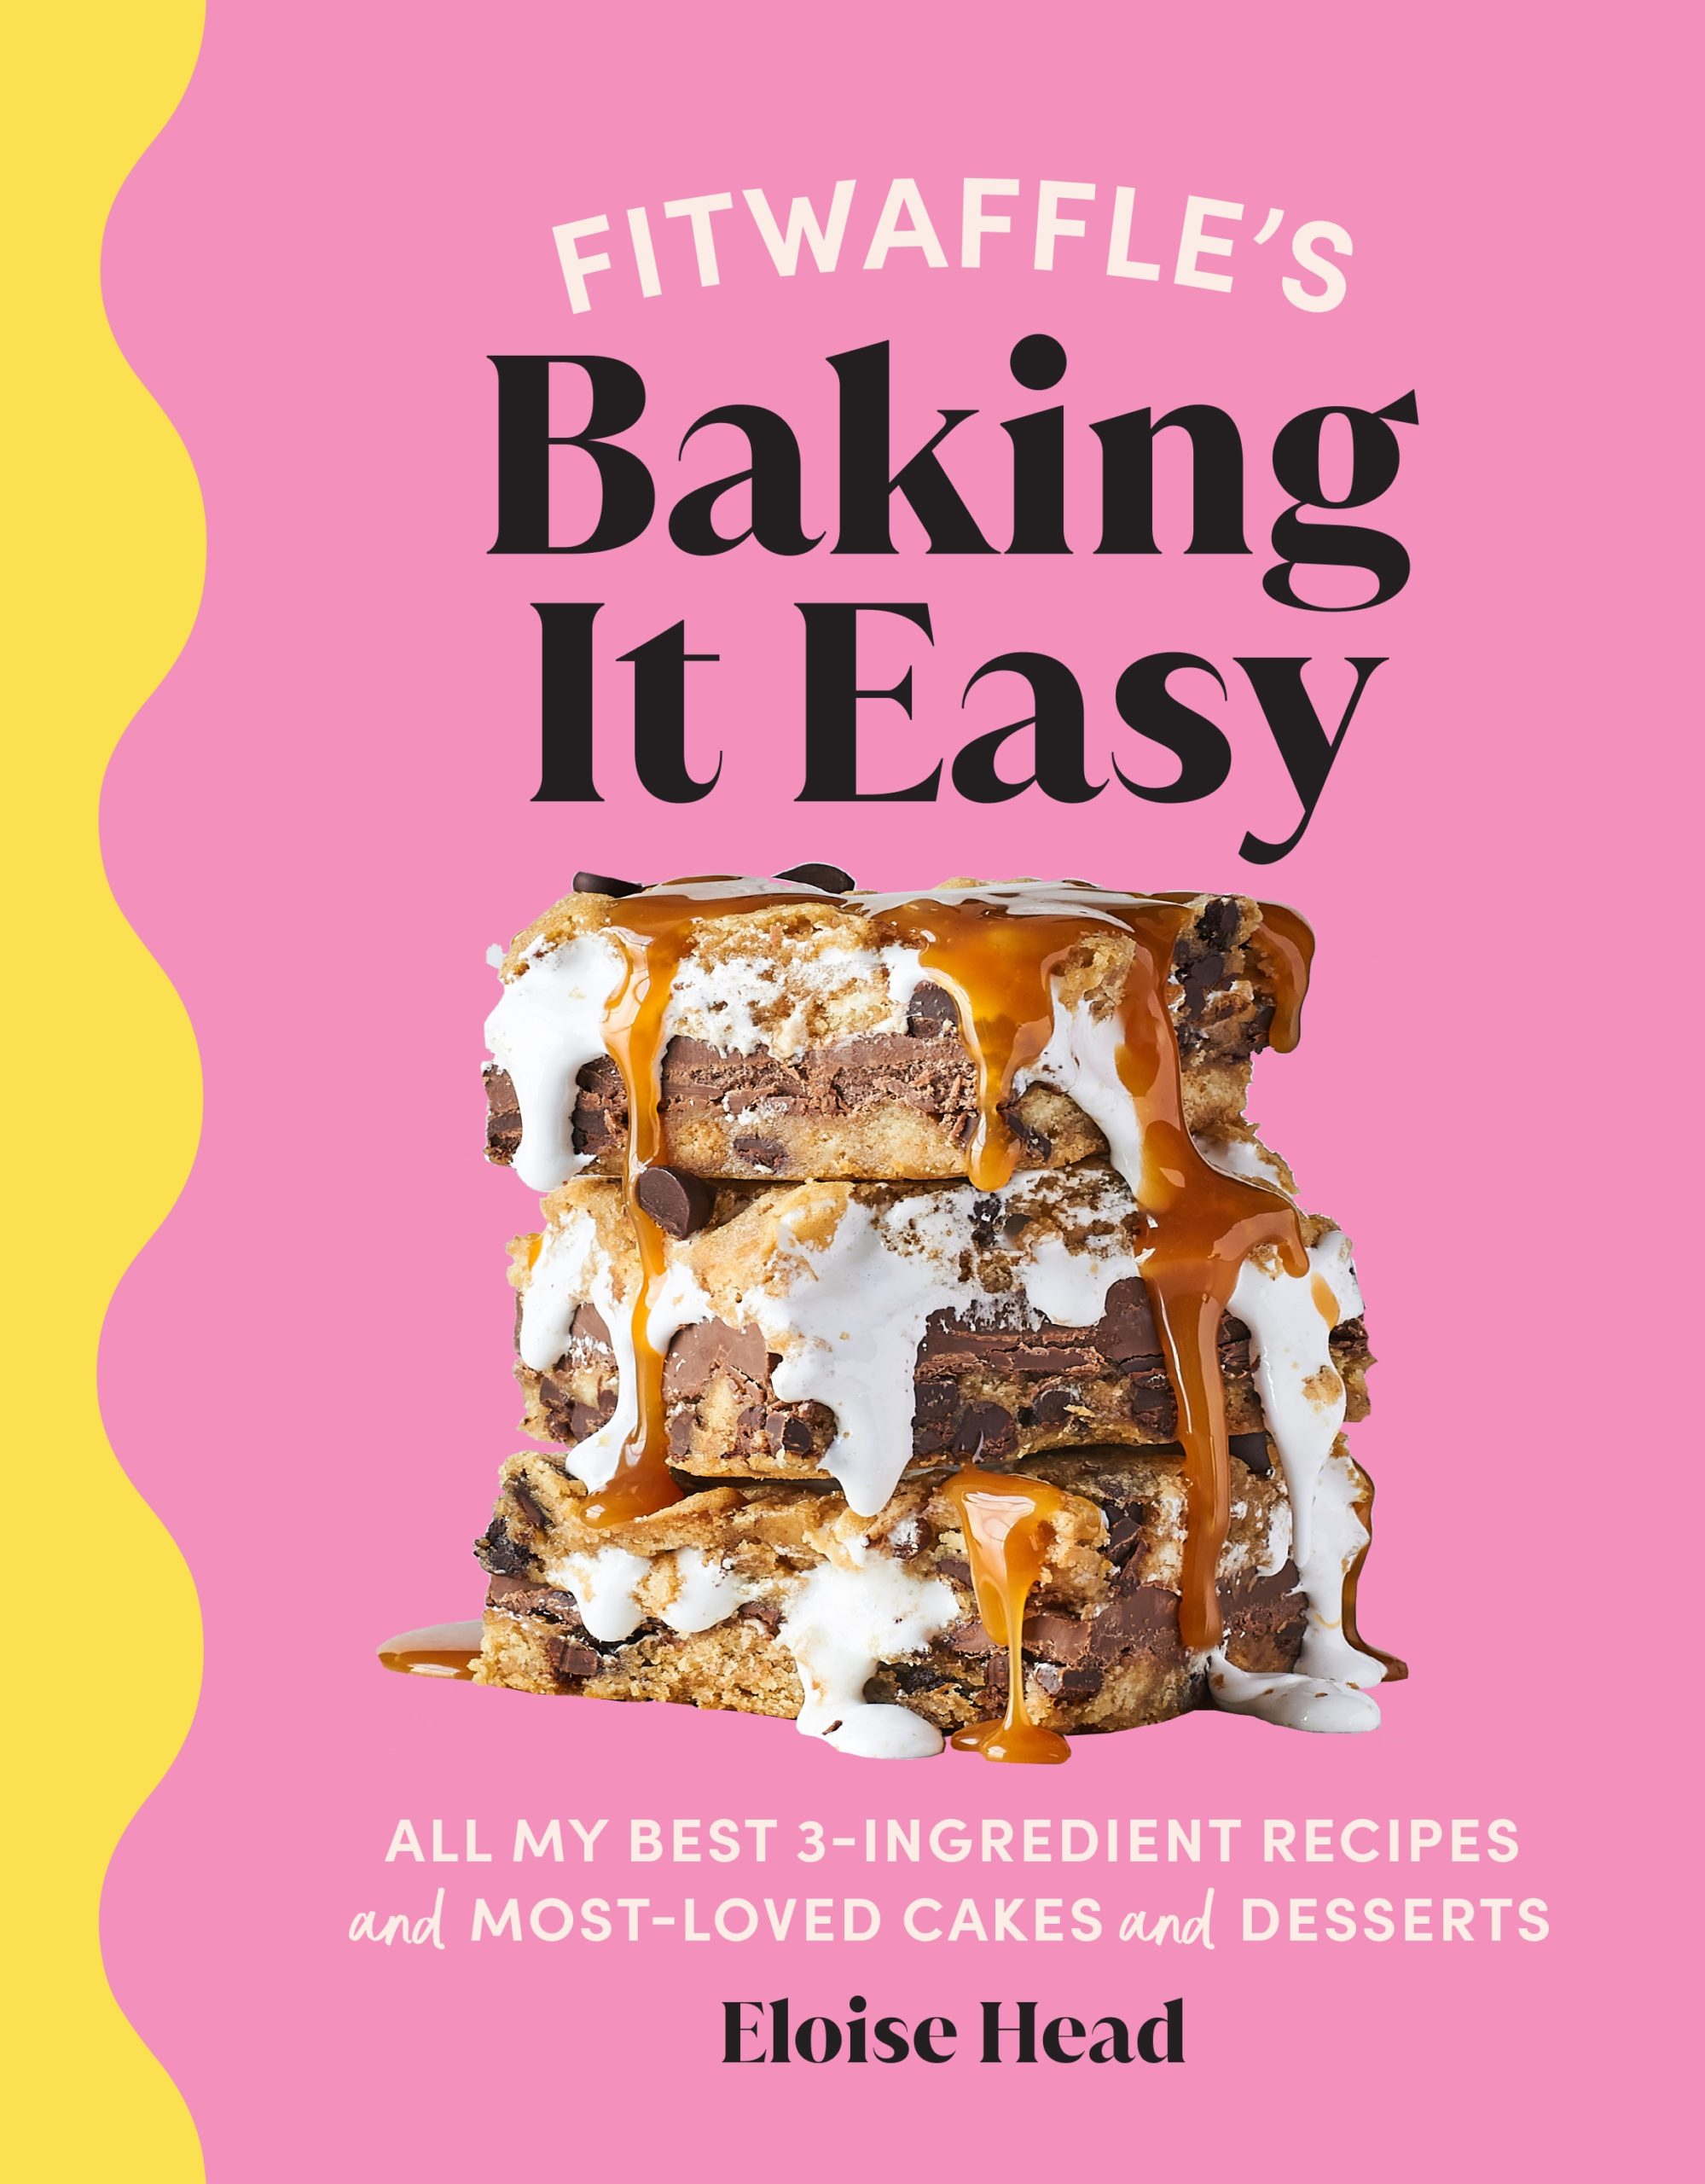 Fitwaffle's Baking It Easy by Eloise Head